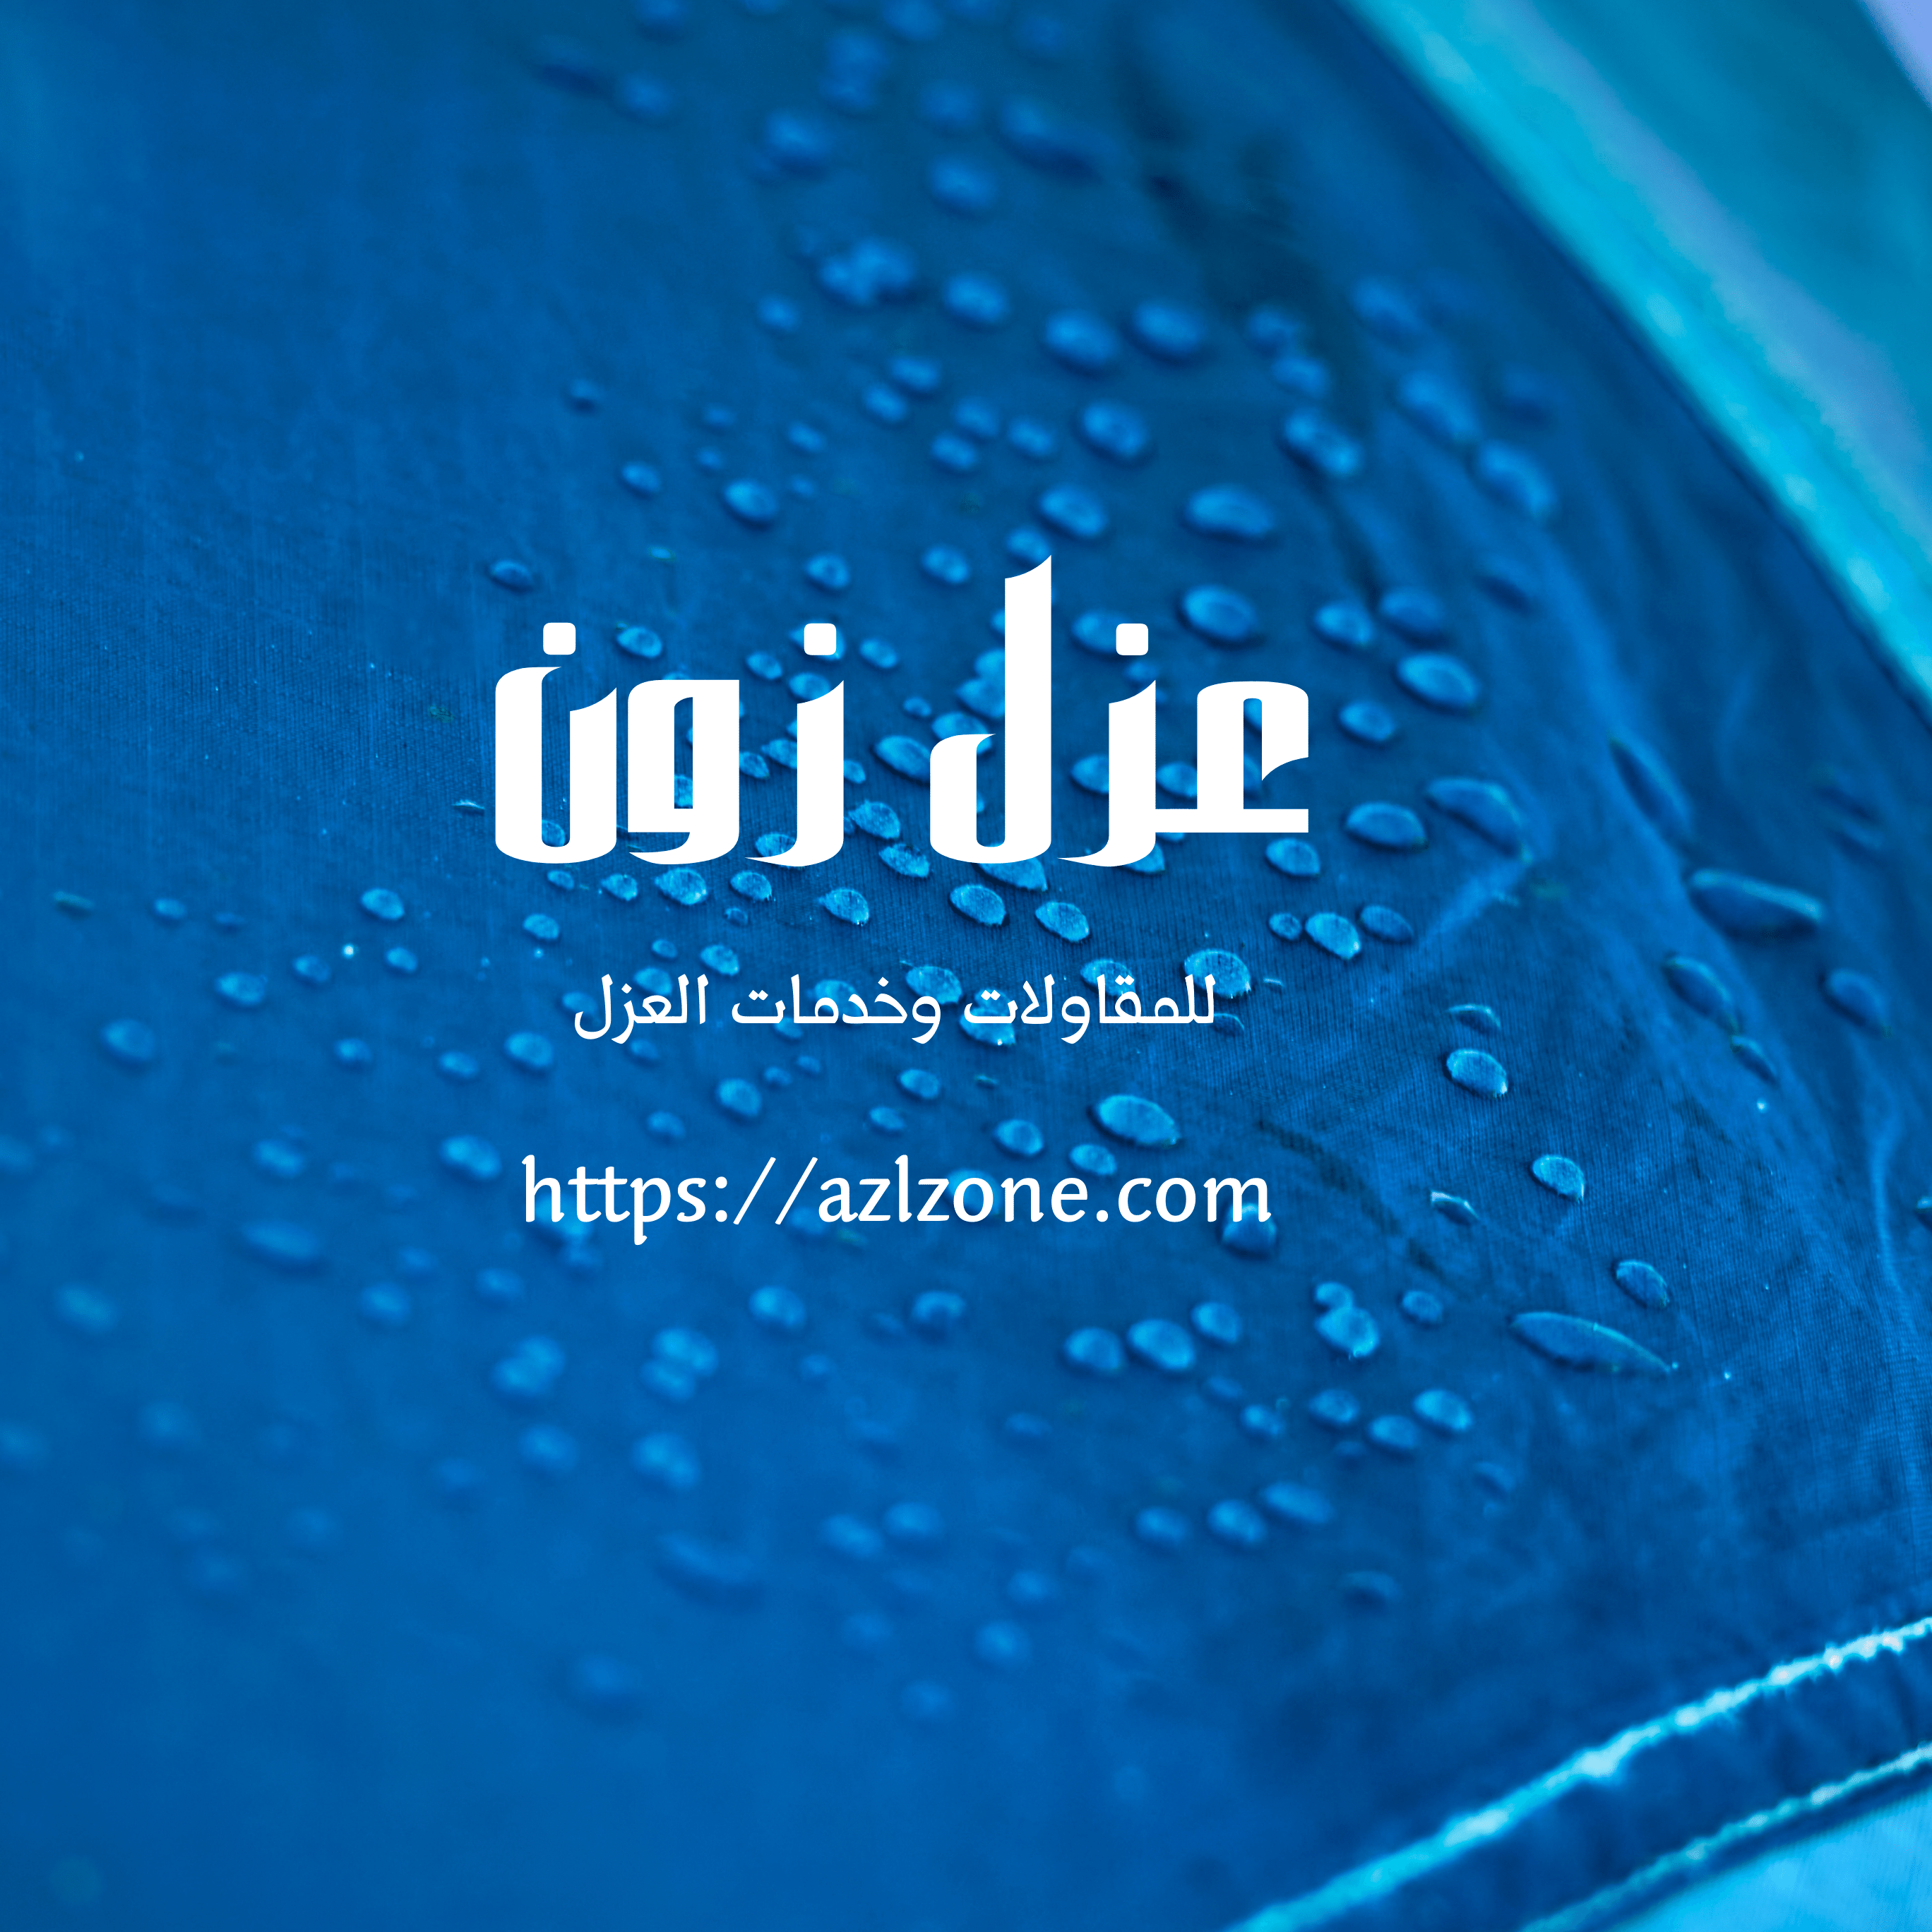 شركة عزل خزانات وتنظيف مياه بصحار عمان خصم 40%